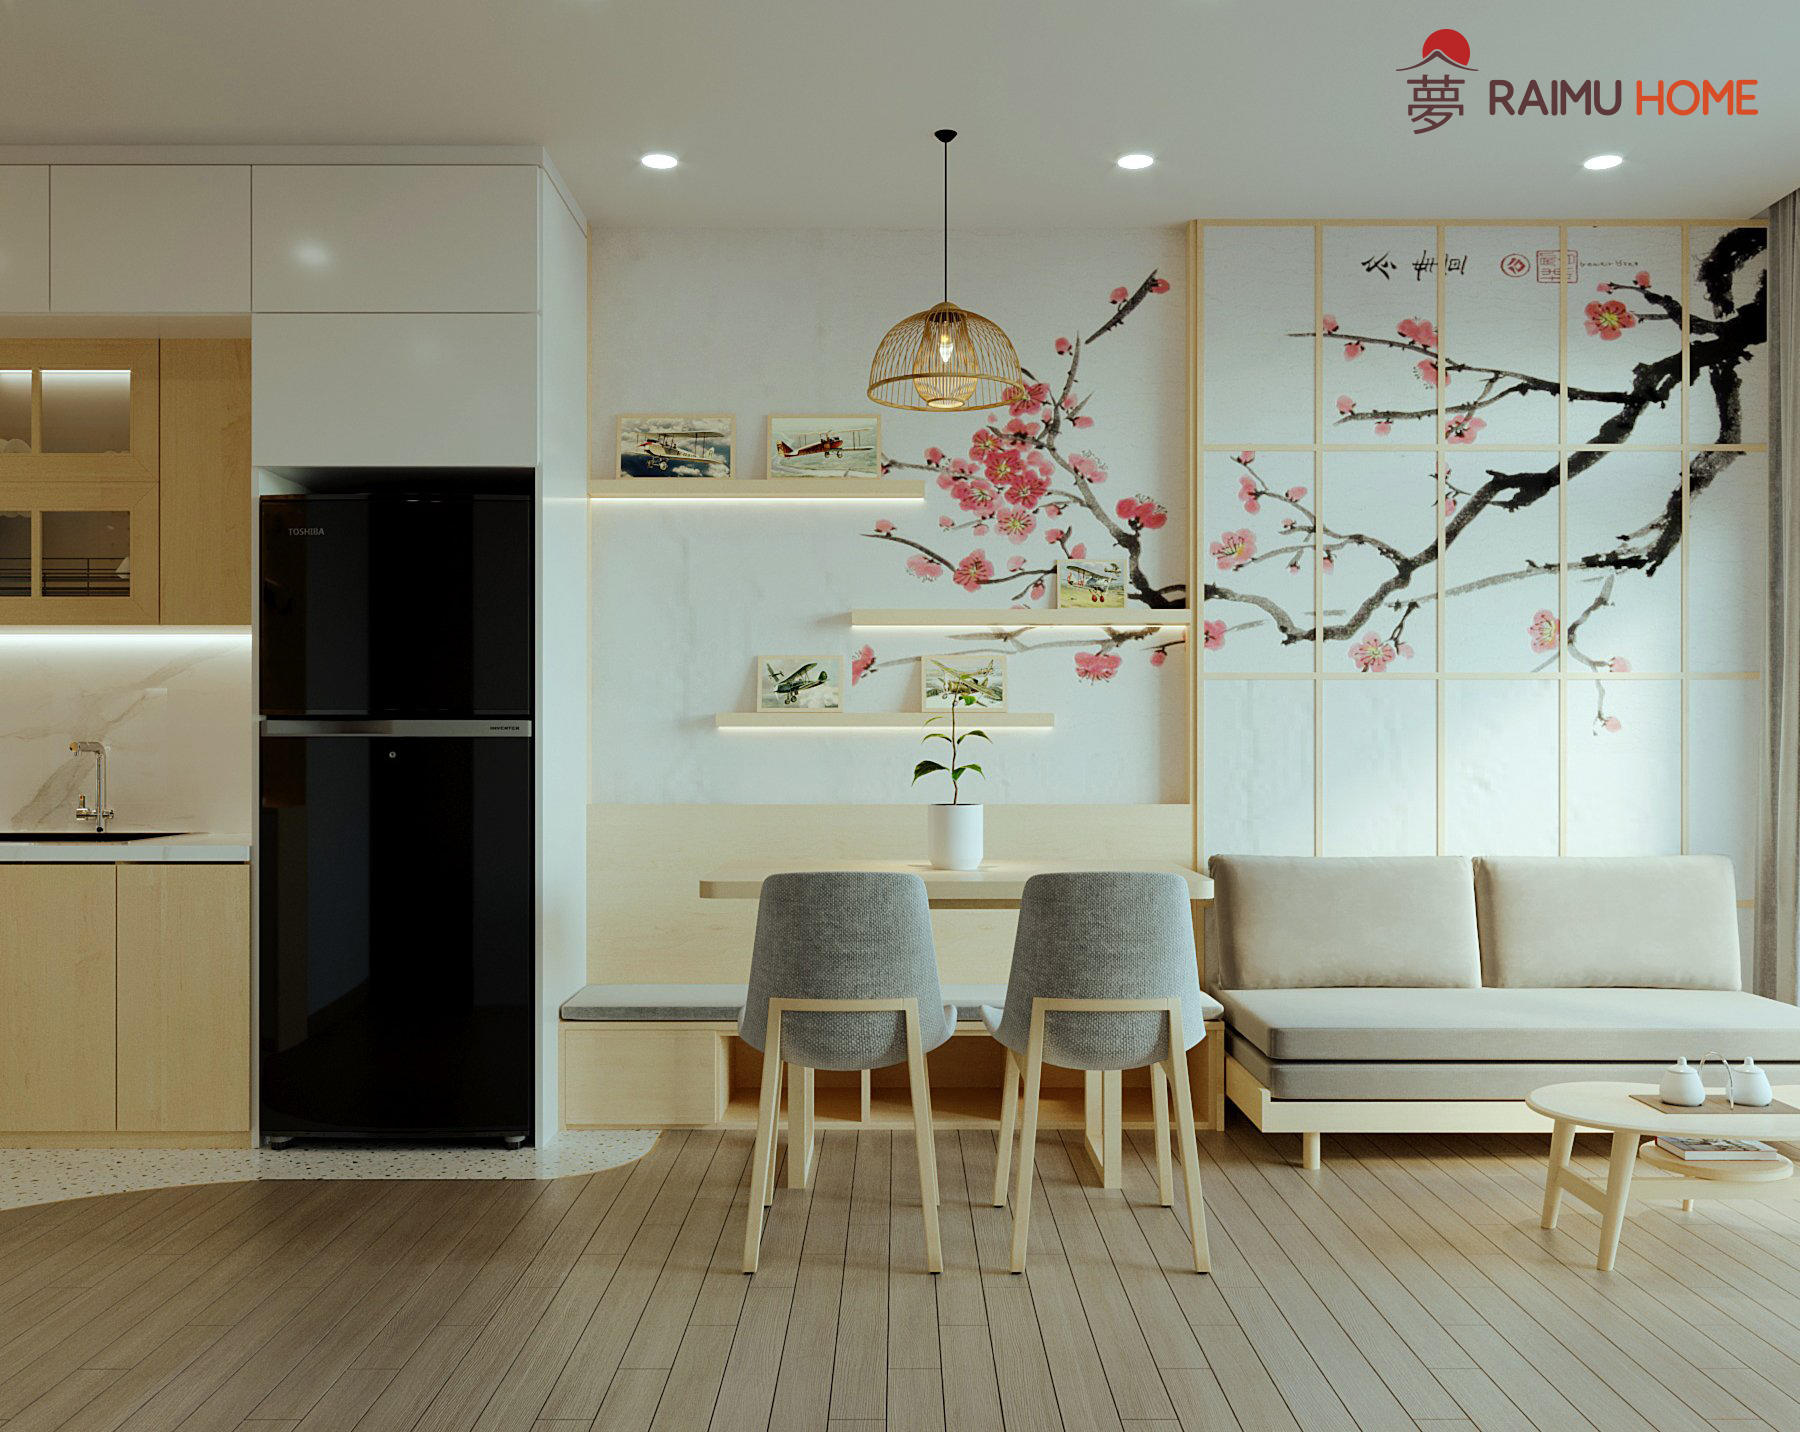 Thiết kế nội thất chung cư phong cách Nhật Bản:
Với sự kết hợp giữa lối sống tối giản và tính thẩm mỹ, thiết kế nội thất chung cư phong cách Nhật Bản không chỉ mang lại không gian sống đẳng cấp, mà còn tạo ra một môi trường sống thân thiện và thoải mái. Hãy xem hình ảnh liên quan đến thiết kế này để có thể tận hưởng cảm giác yên bình và tự nhiên.